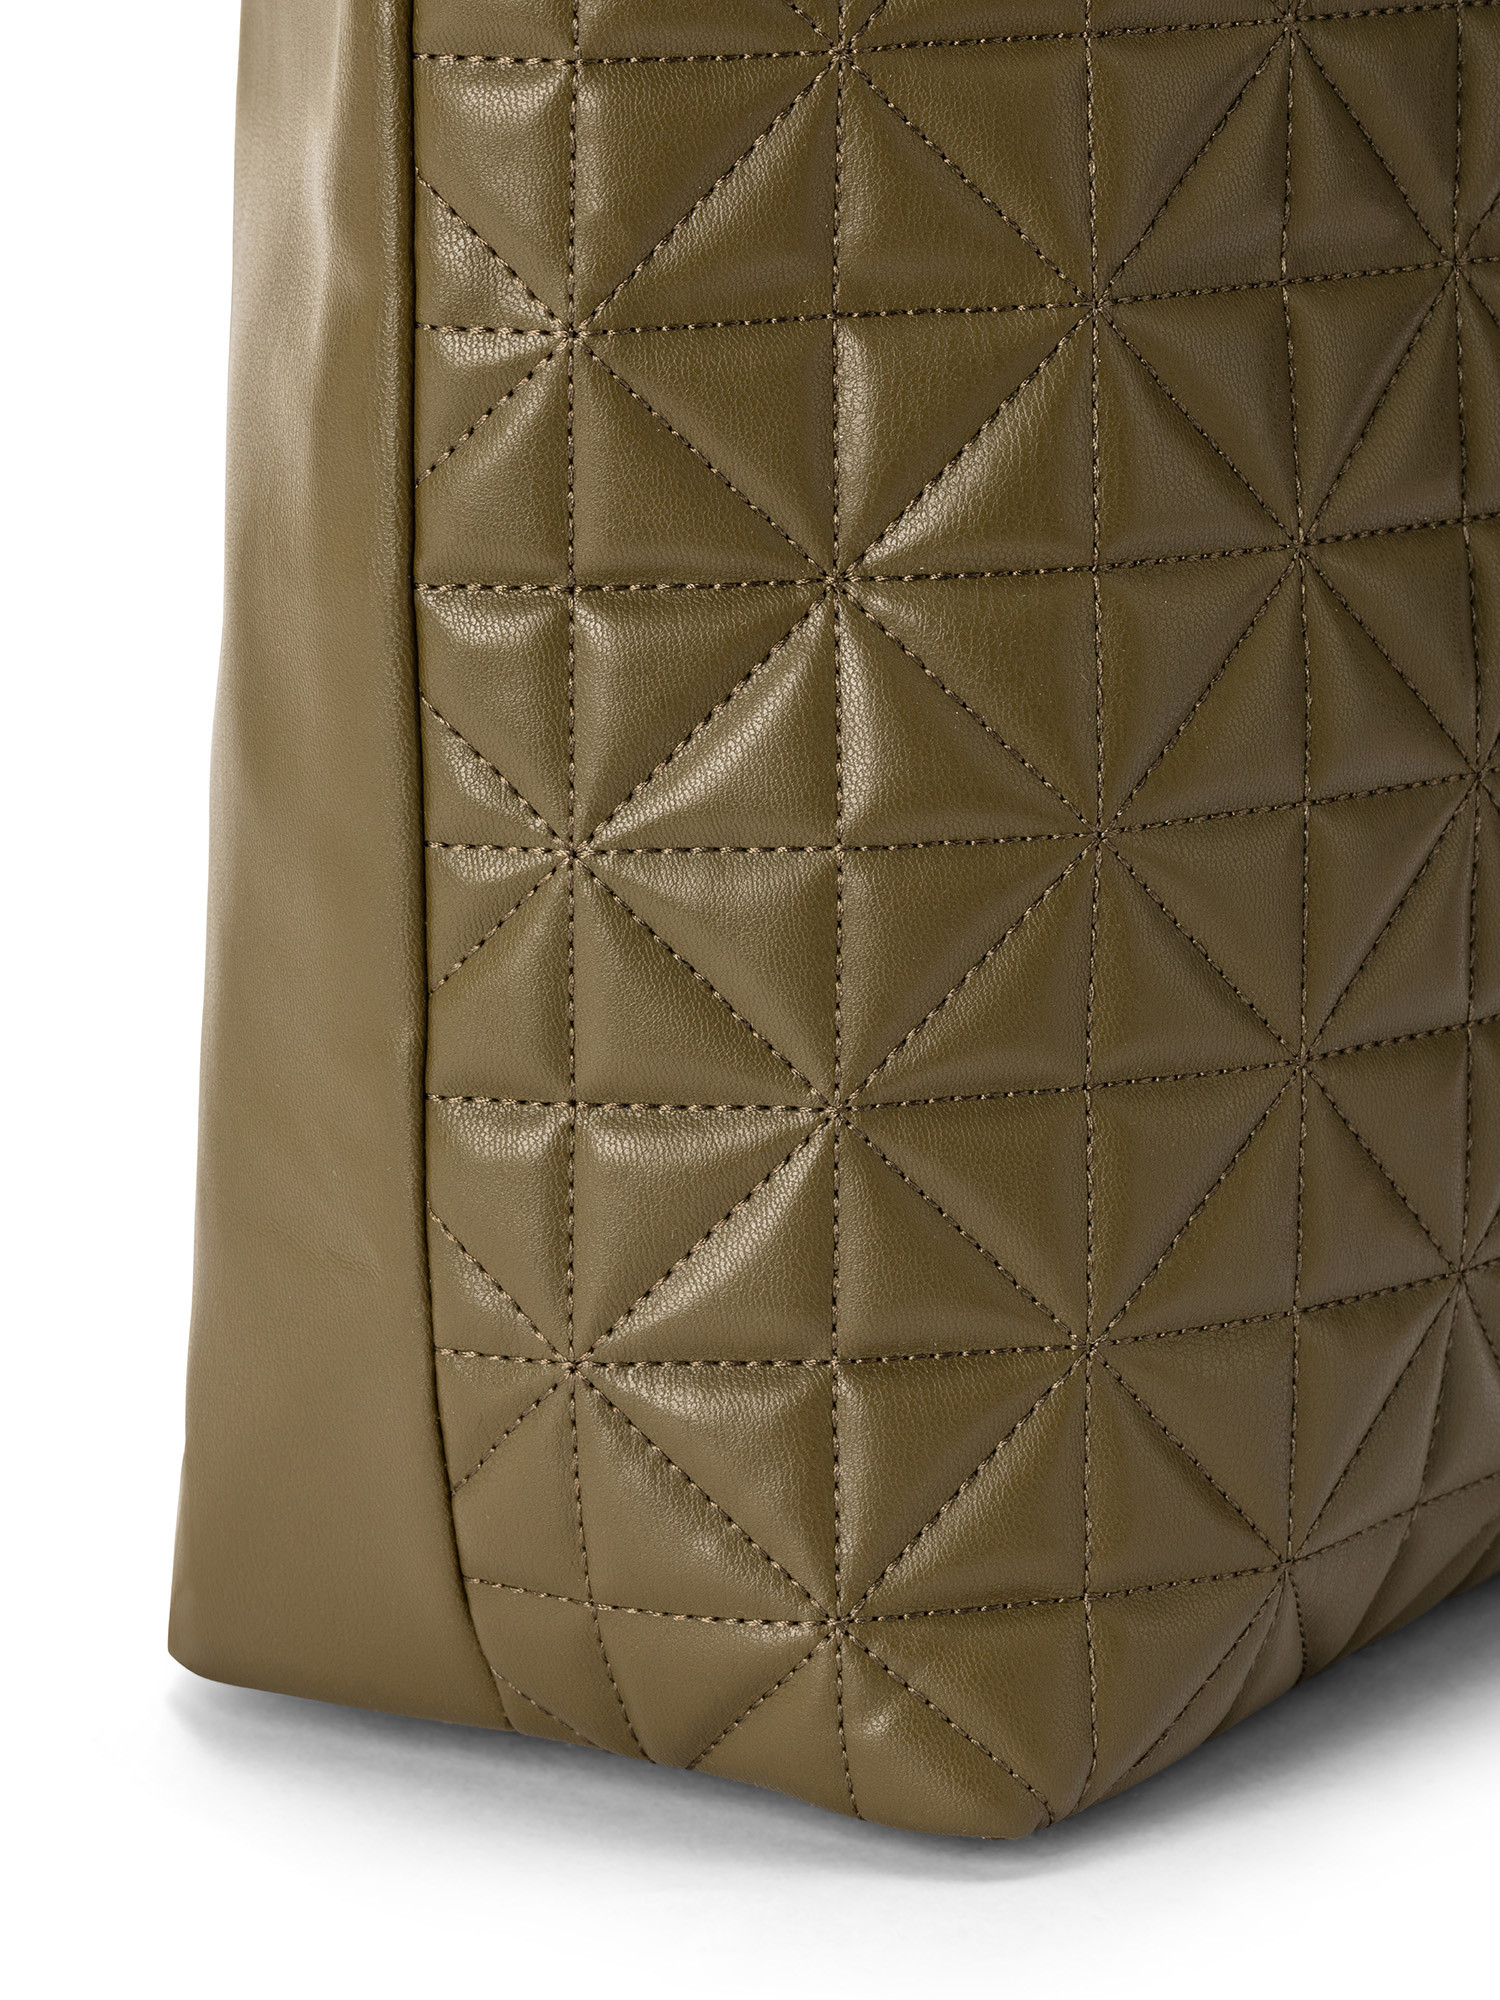 Koan - Shopping bag with motif, Green, large image number 2